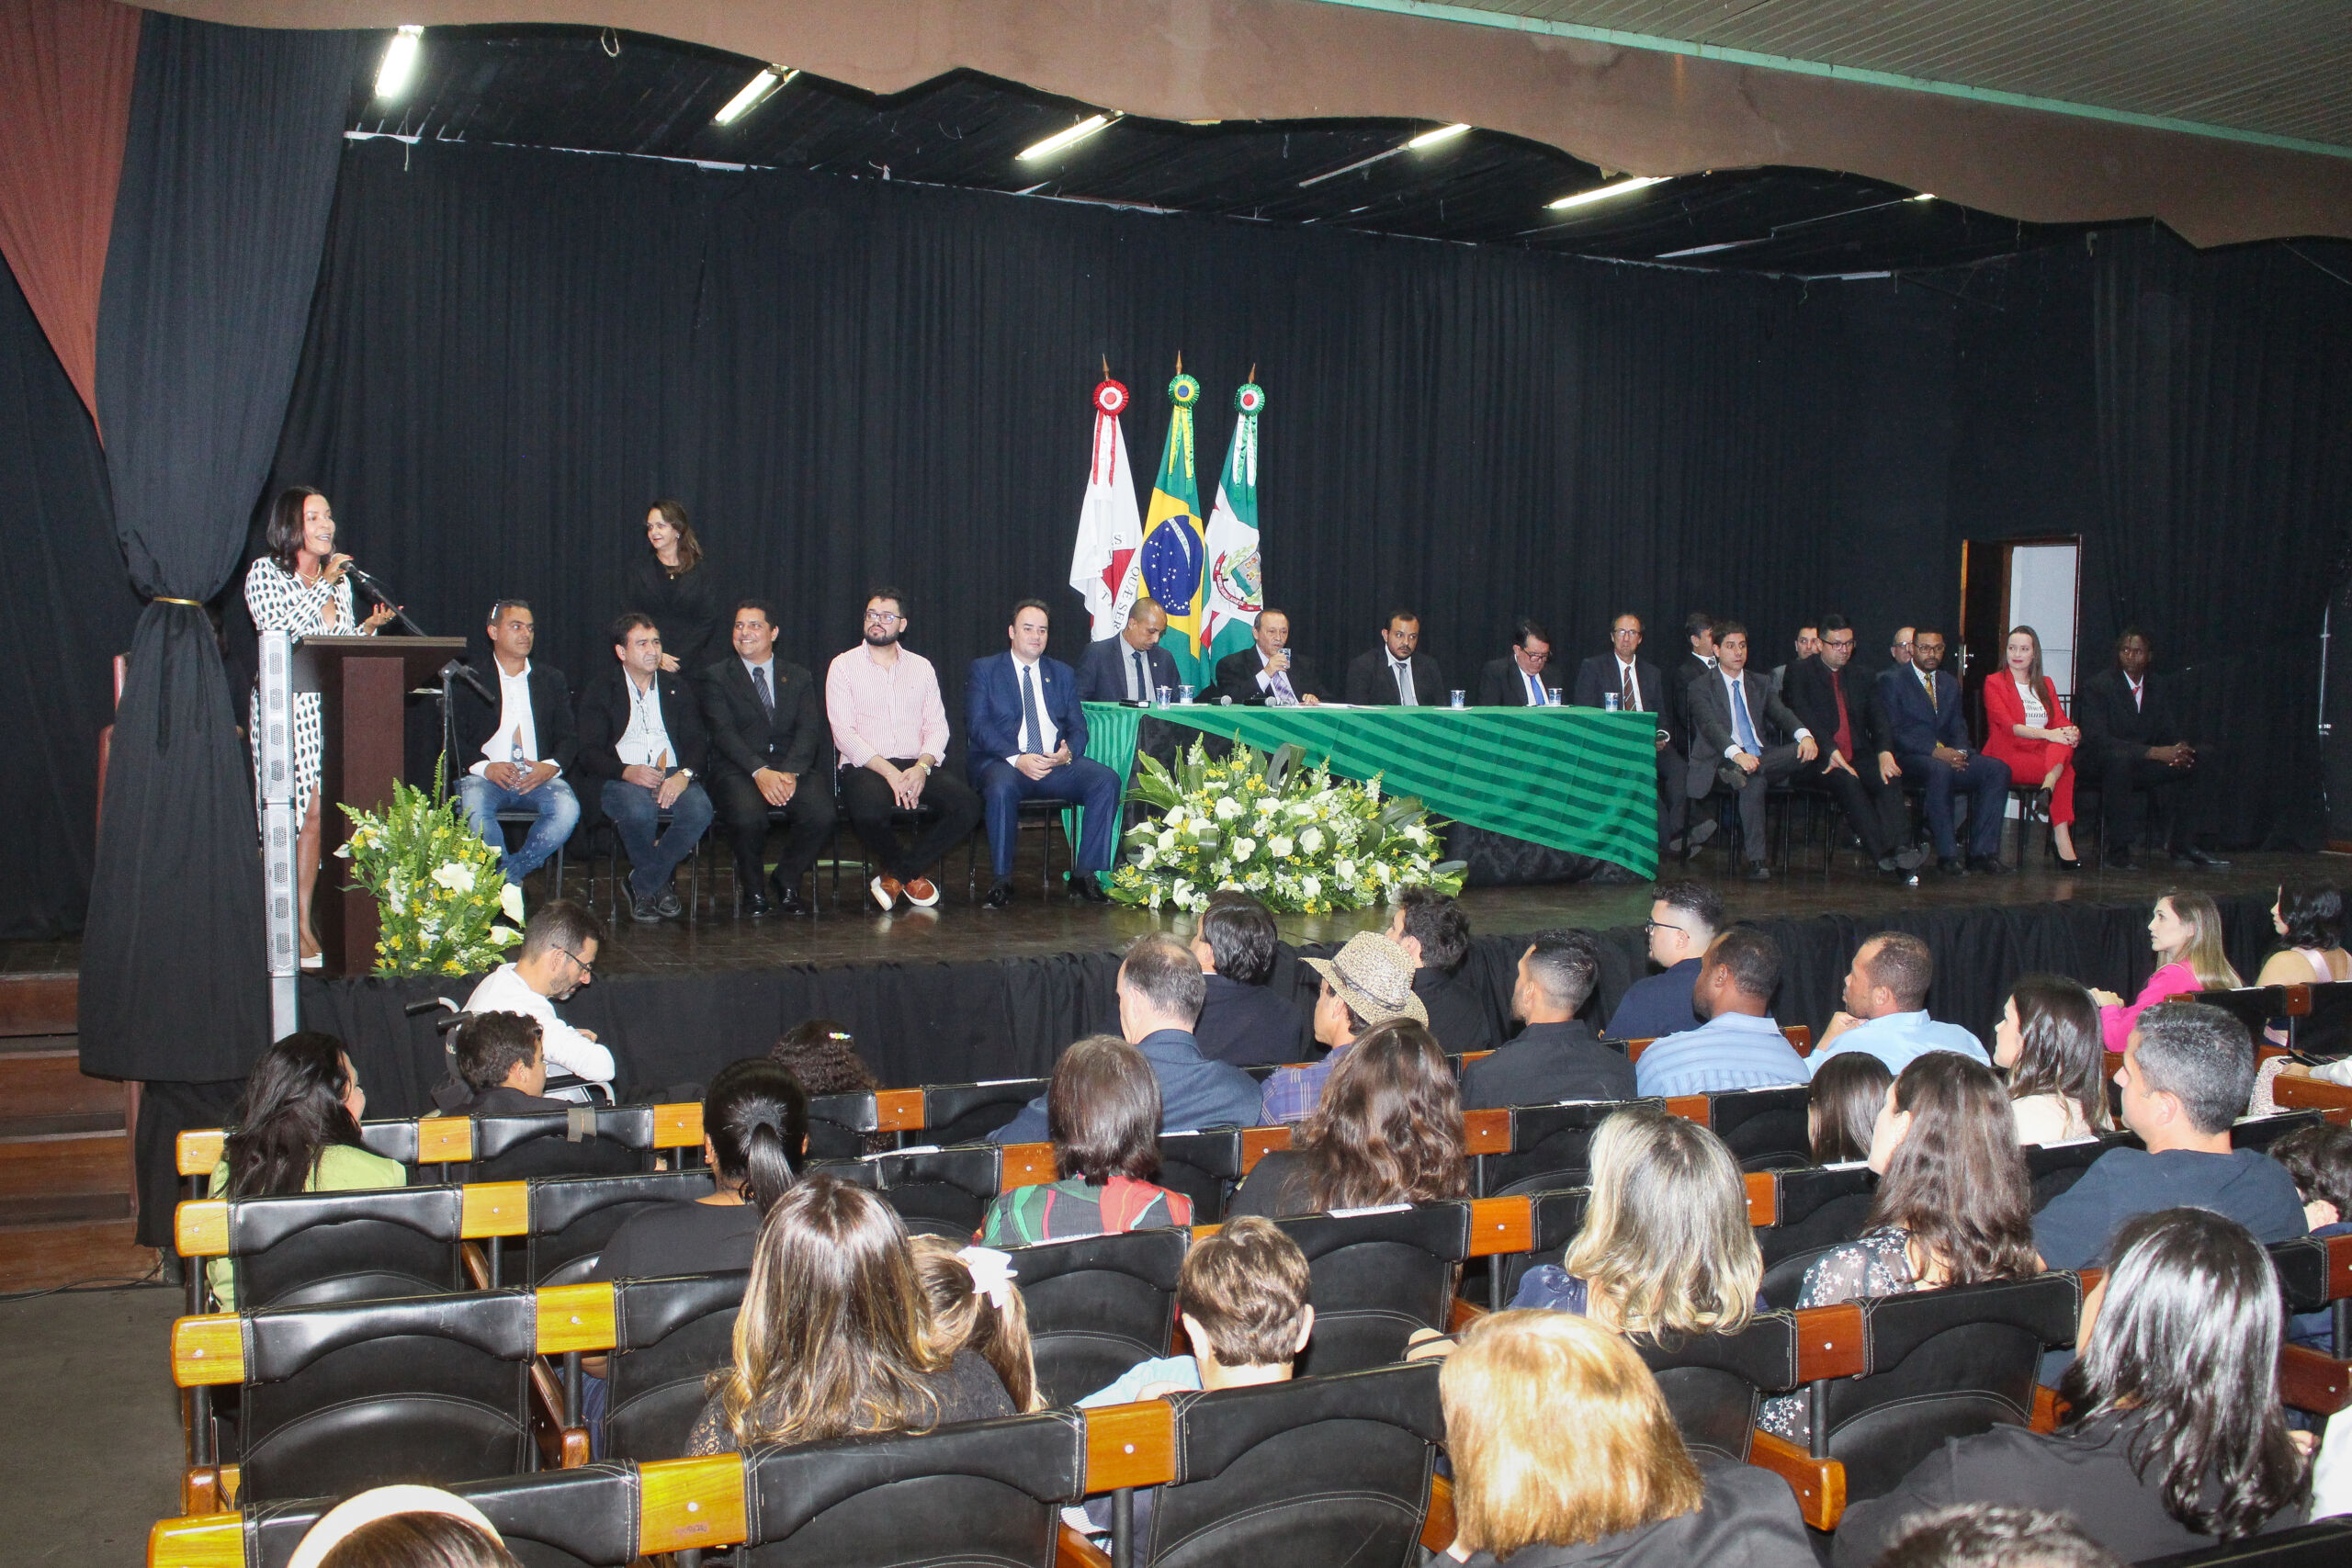 Empreendedores lafaietenses recebem homenagens da Câmara Municipal.